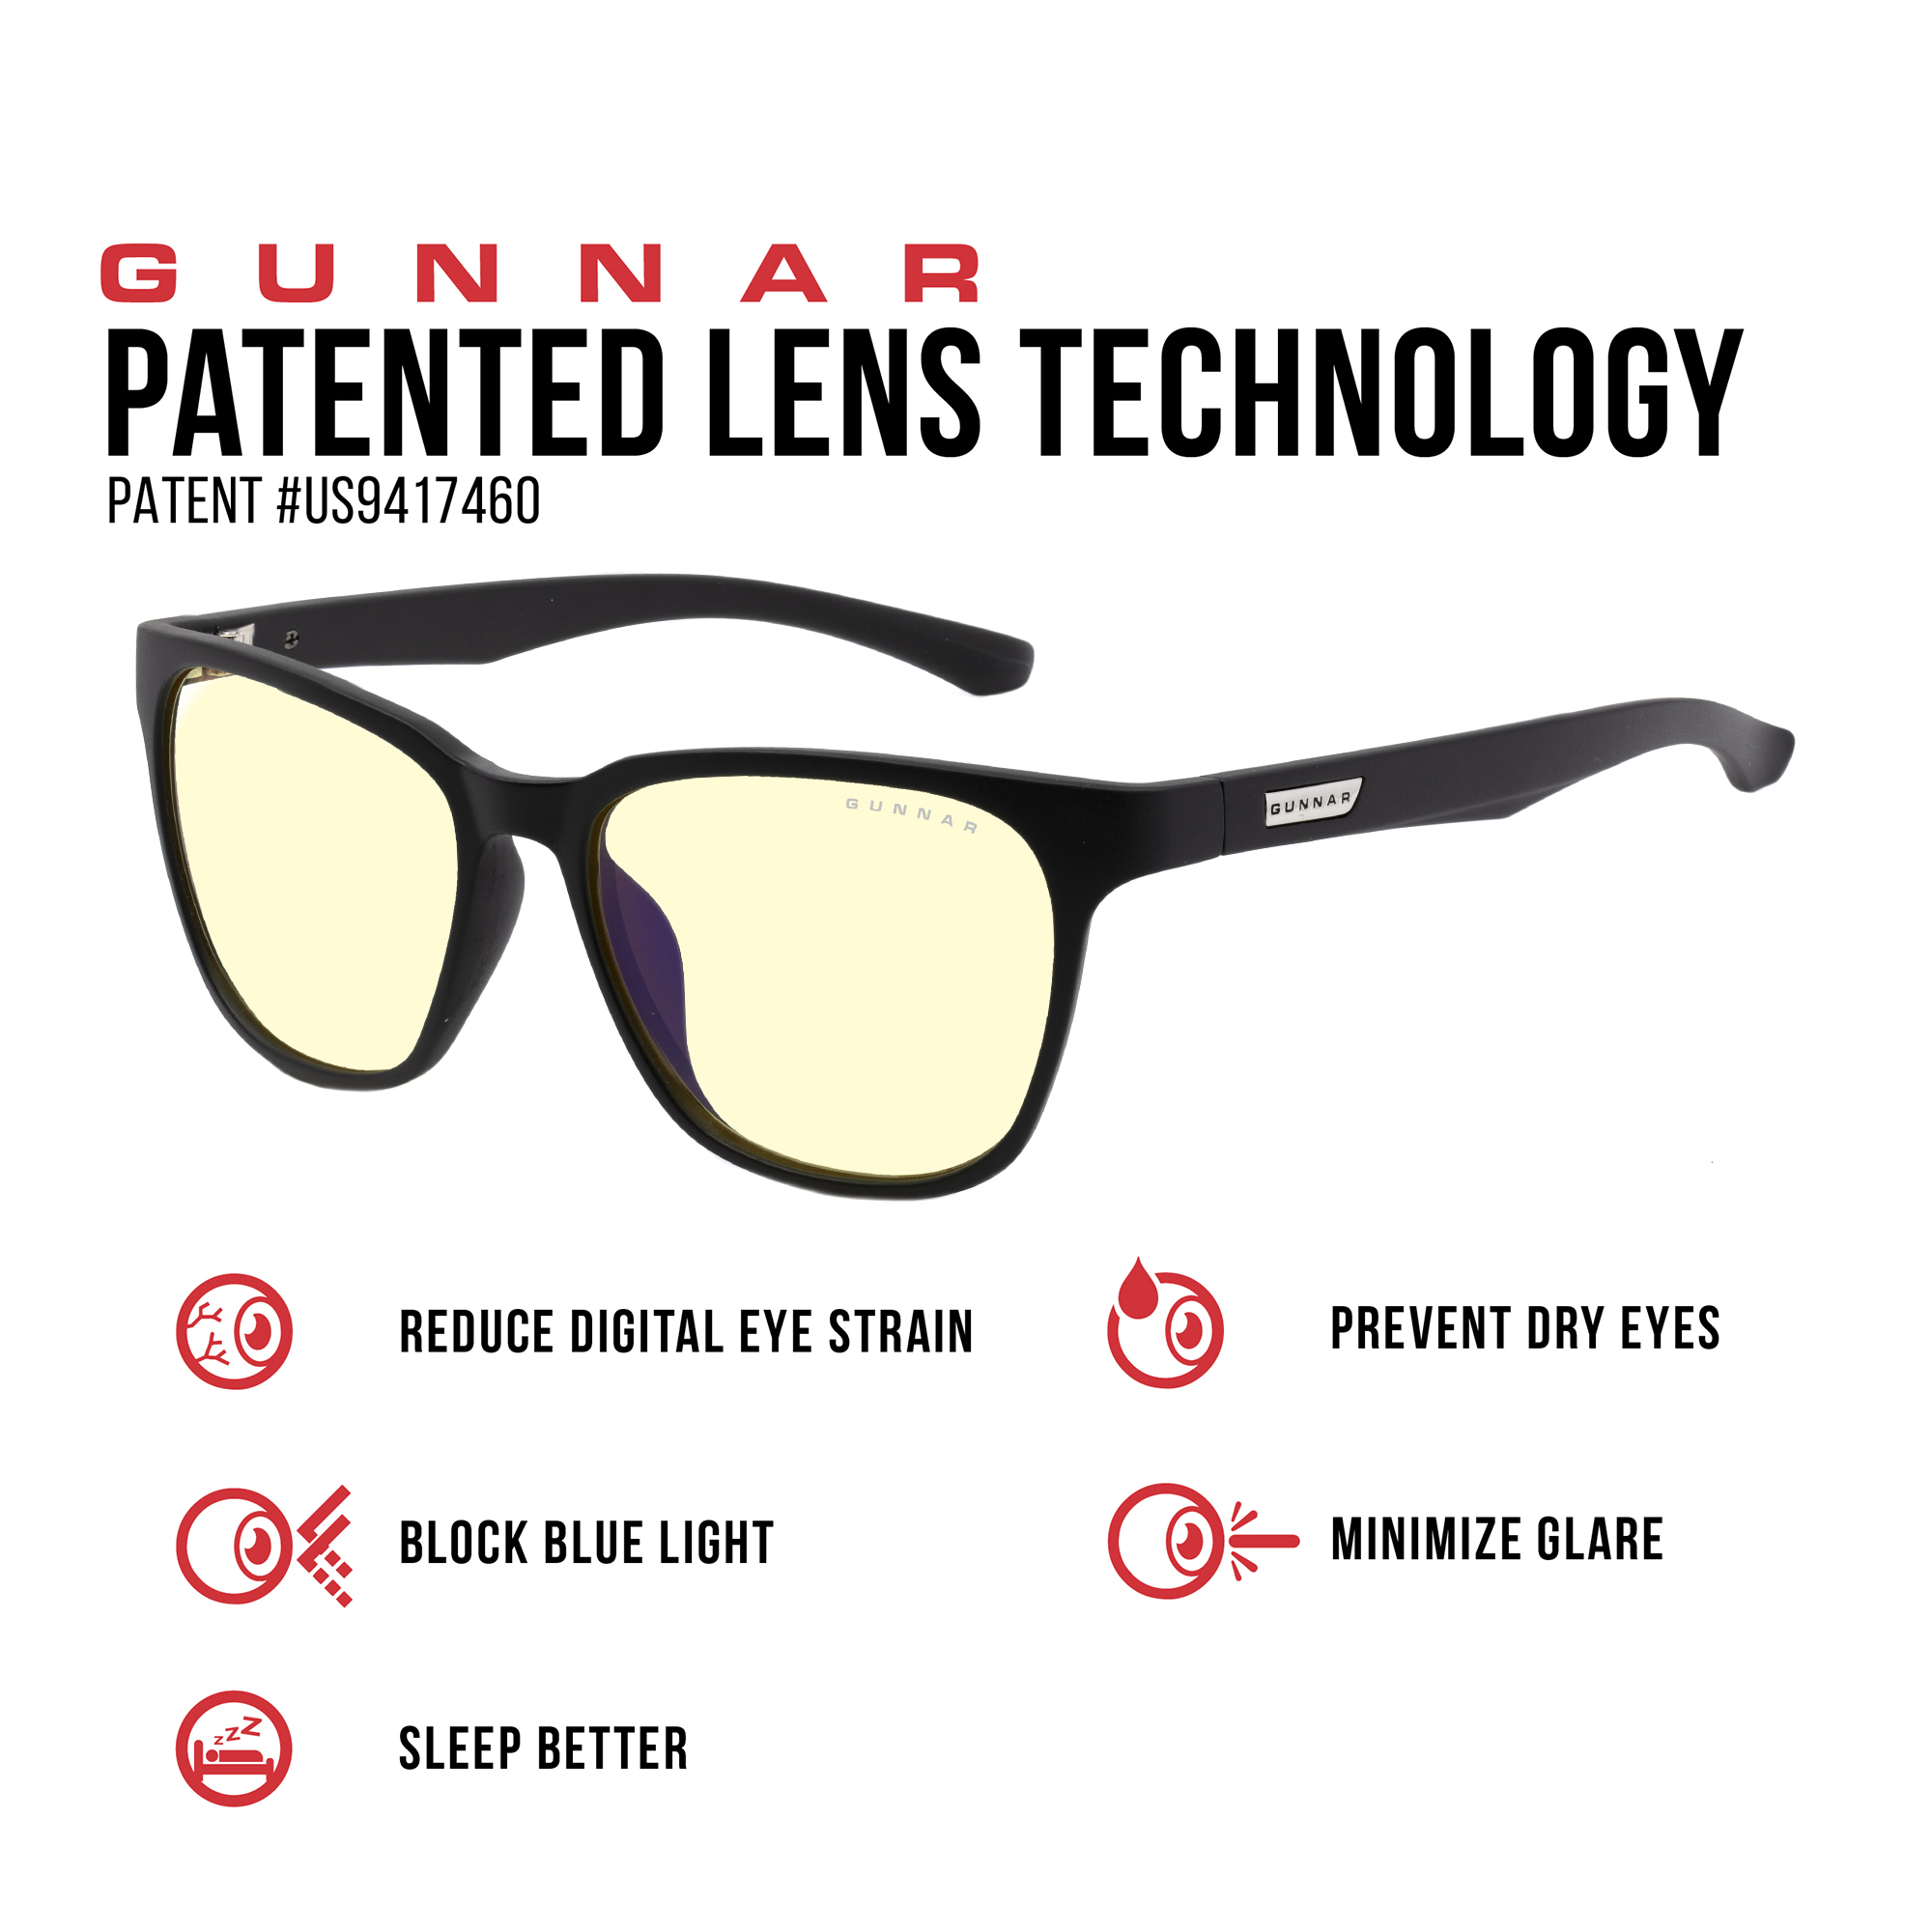 GUNNAR Berkeley, Onyx/Fade Rahmen, Tönung, Brille UV-Schutz, Premium, Amber Blaulichtfilter, Gaming